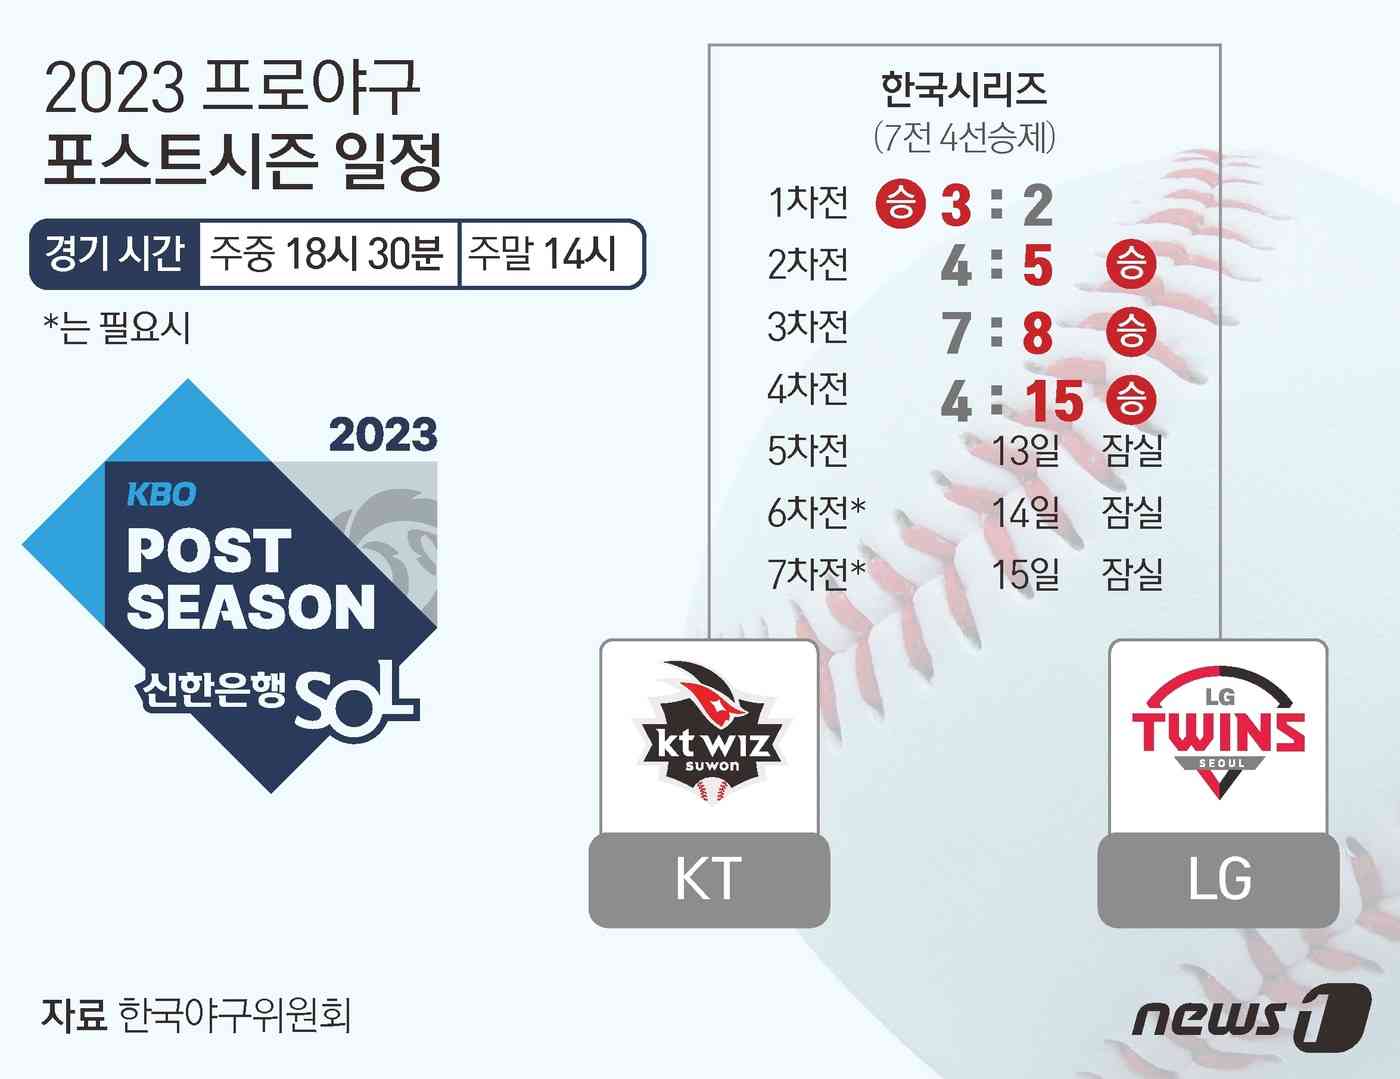 LG는 11일 수원케이티위즈파크에서 열린 2023 신한은행 SOL KBO 한국시리즈 4차전에서 홈런 3개 포함 장단 17안타를 몰아쳐 KT를 15-4로 제압했다. 시리즈 전적 3승1패를 거둔 LG는 우승에 절대적으로 유리한 고지를 밟았다. 역대 한국시리즈에서 3승1패(무승부 포함)로 앞선 팀의 우승 확률은 94.1%(17회 중 16회)다. © News1 김초희 디자이너